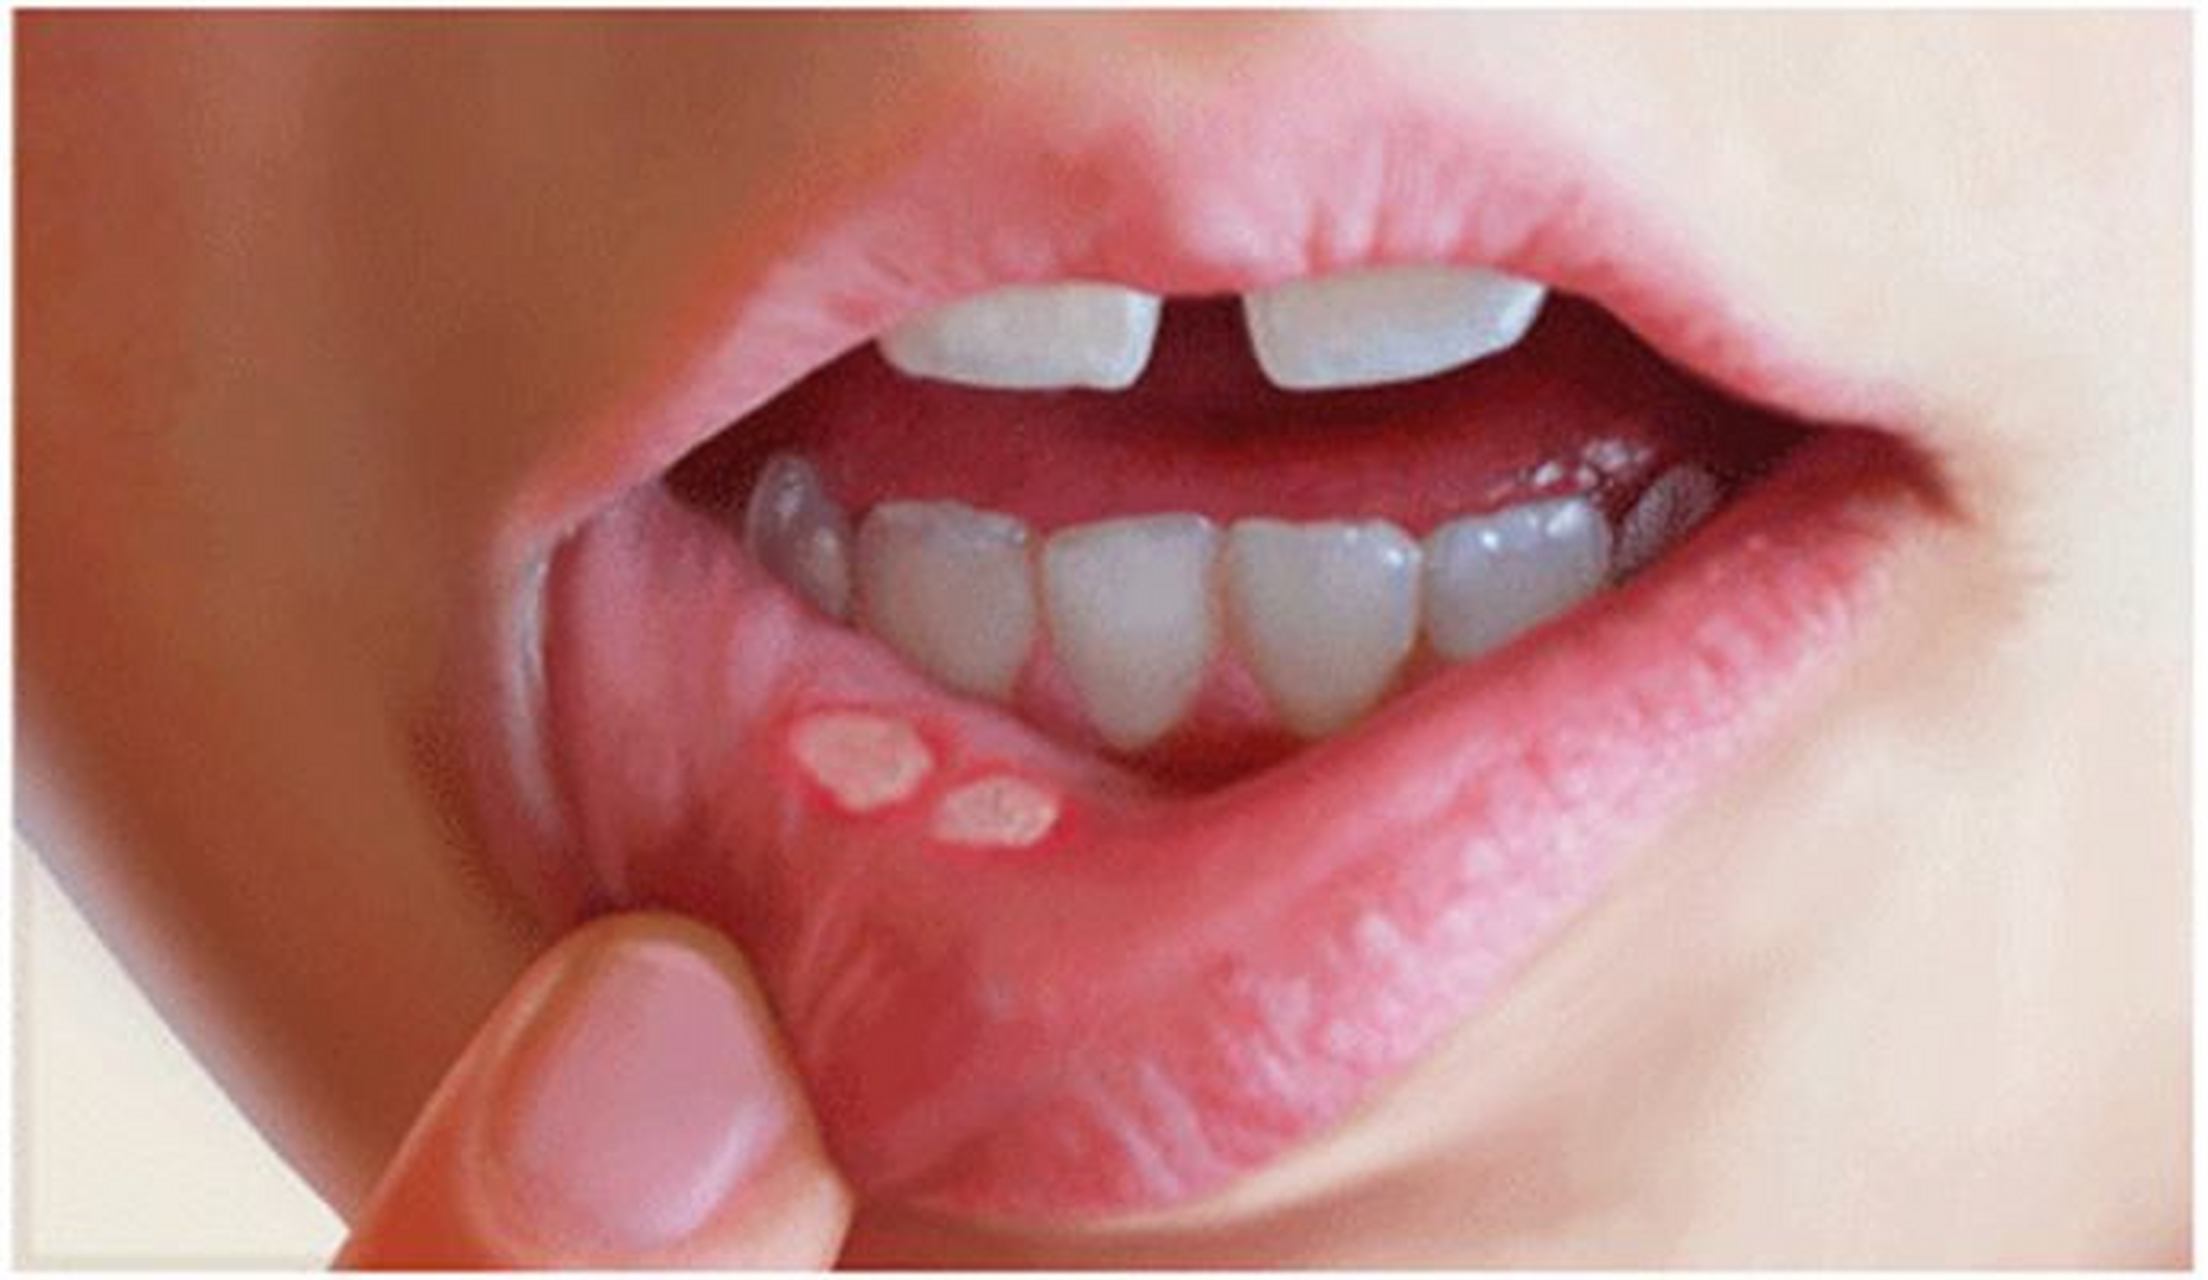 很多朋友们在体检的时候总是会忽略口腔疾病检查,认为口腔里面除了